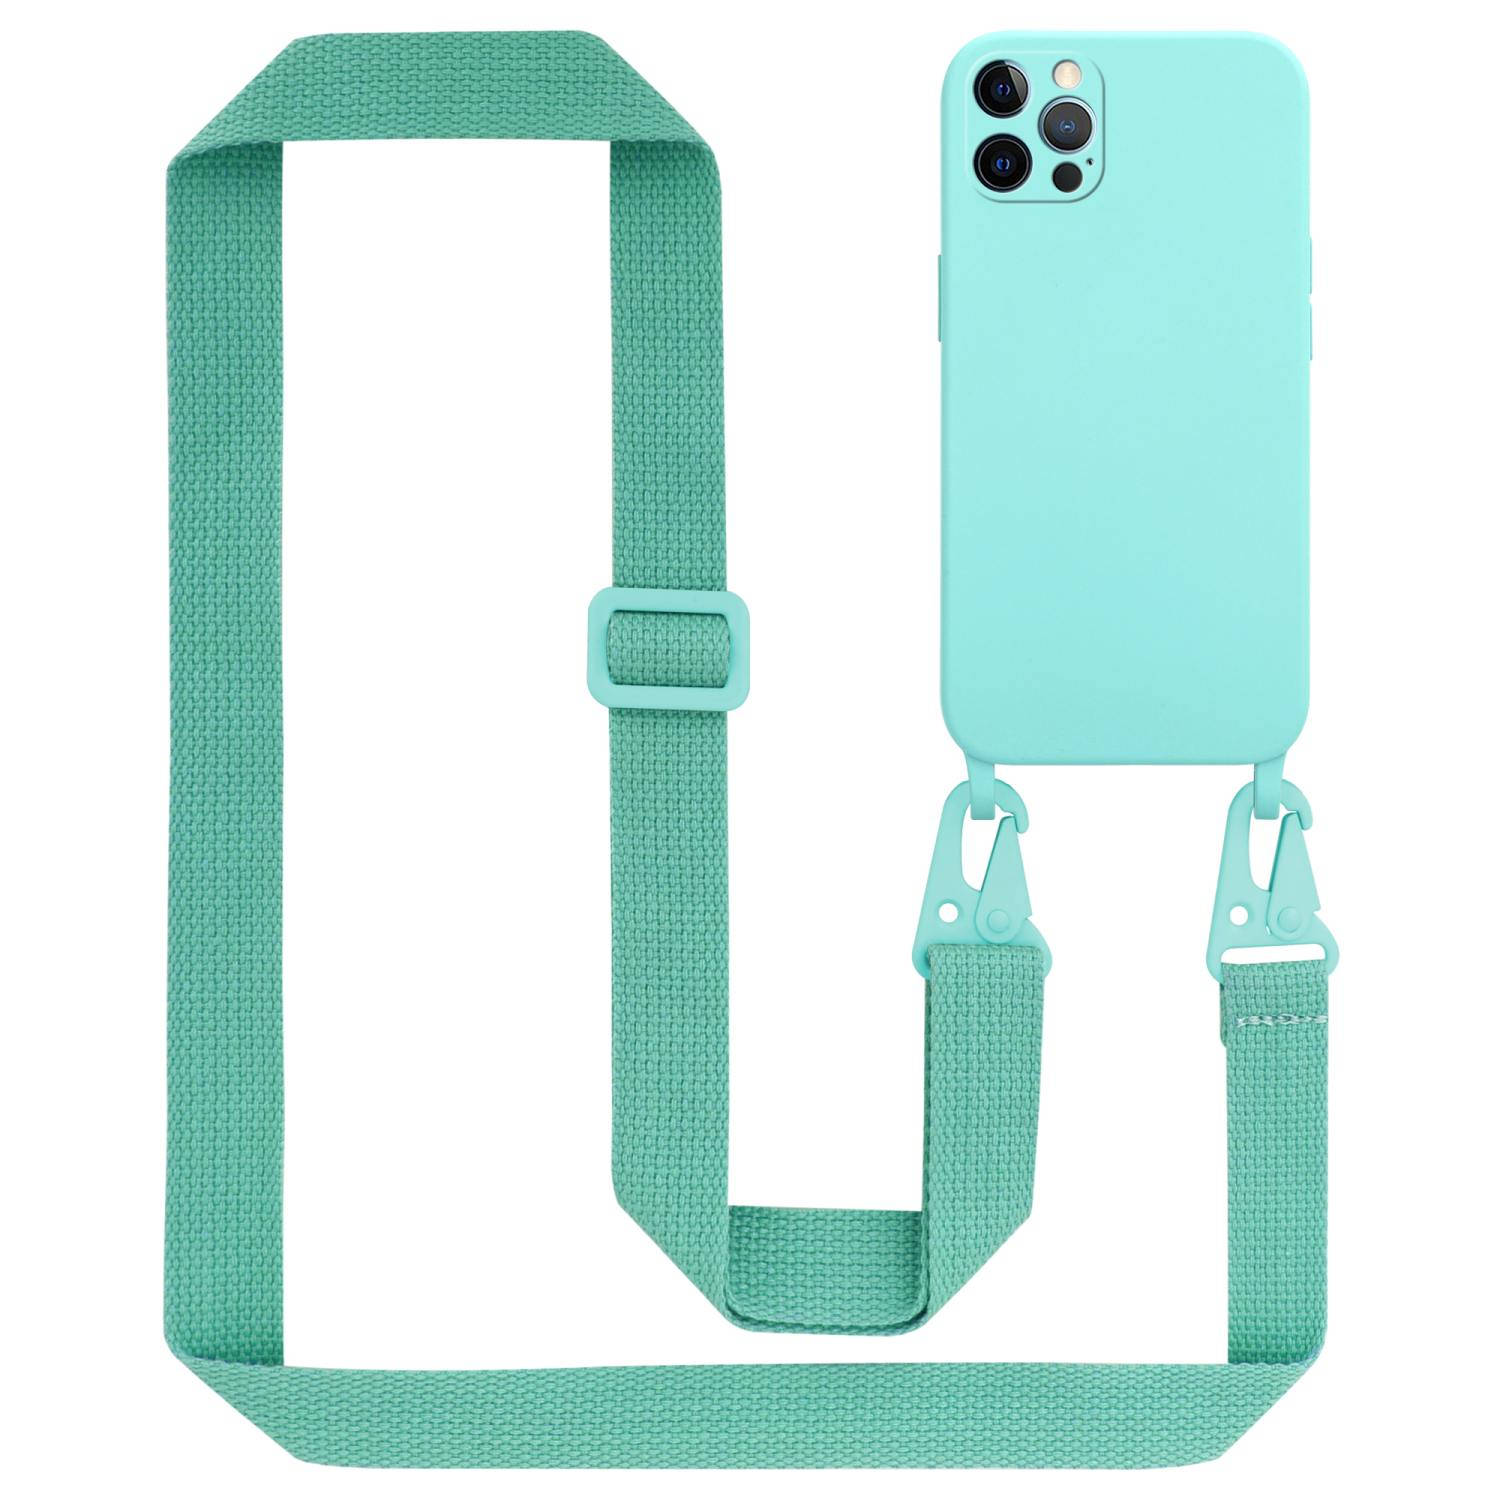 Cadorabo Mobiele telefoon ketting voor Apple iPhone 12 / 12 PRO in LIQUID TURKOOIS - Silicone beschermhoes met lengte verstelbare koord riem